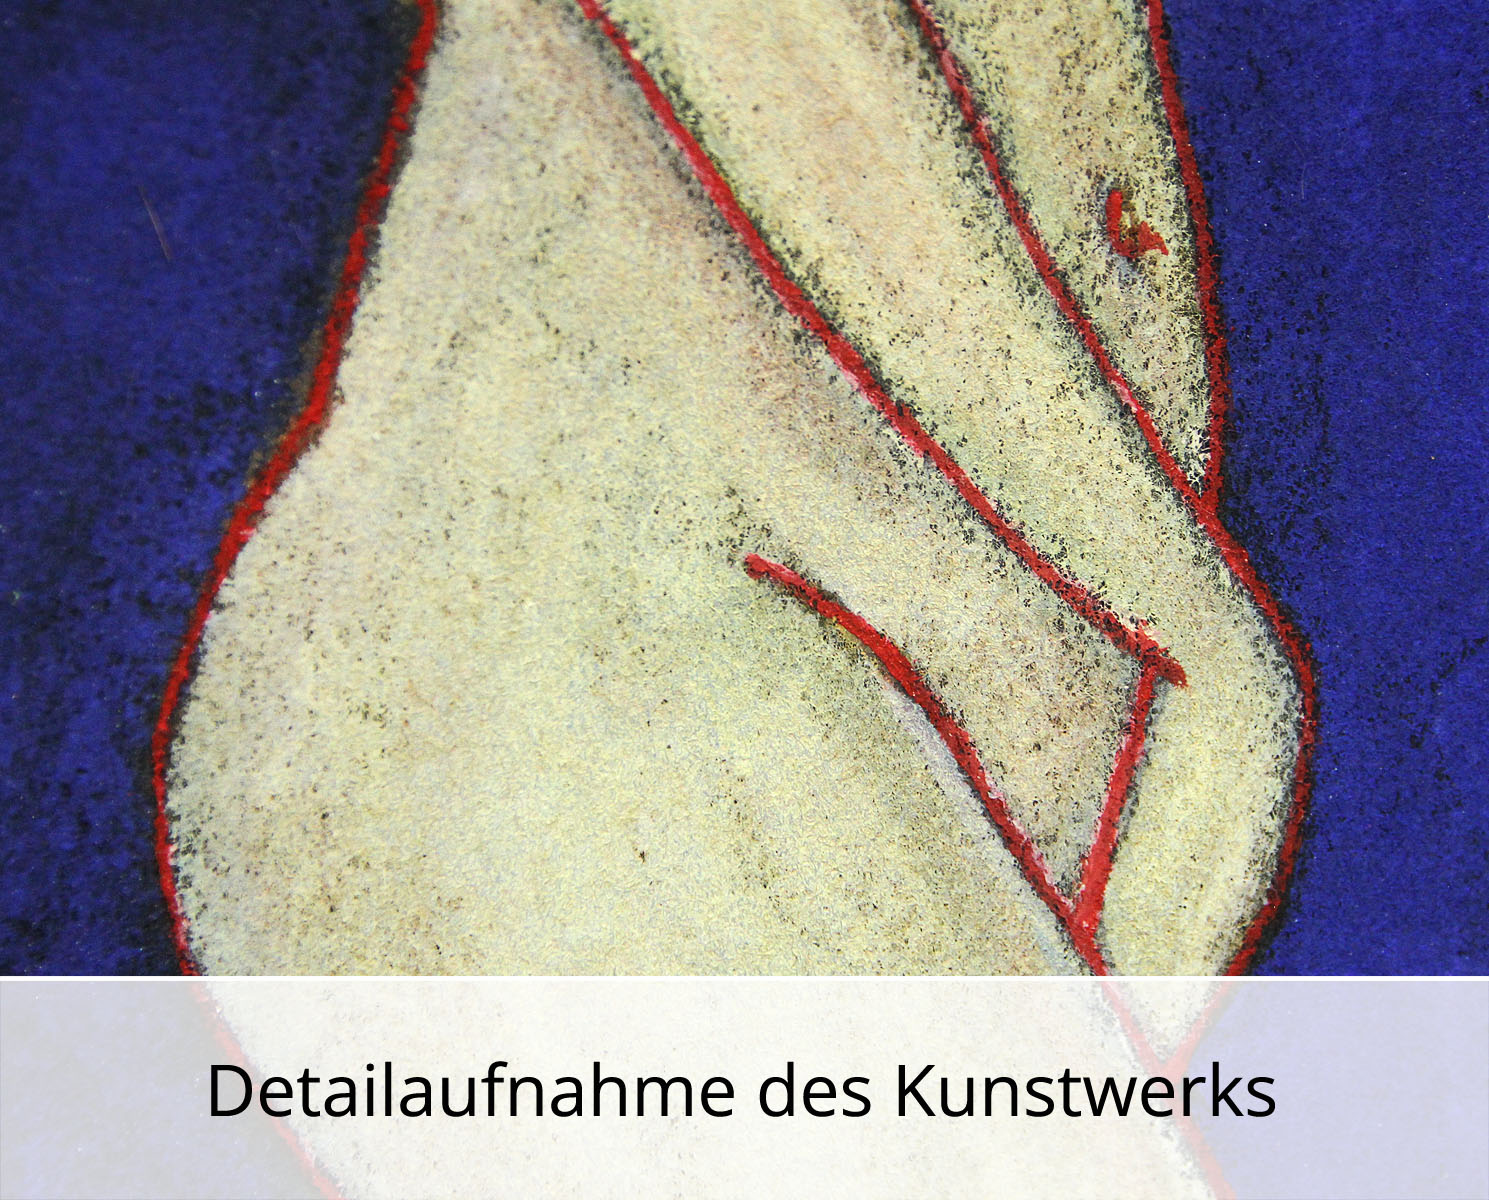 C. Blechschmidt: "Rote Linien", Original/Unikat, zeitgenössisches Ölgemälde